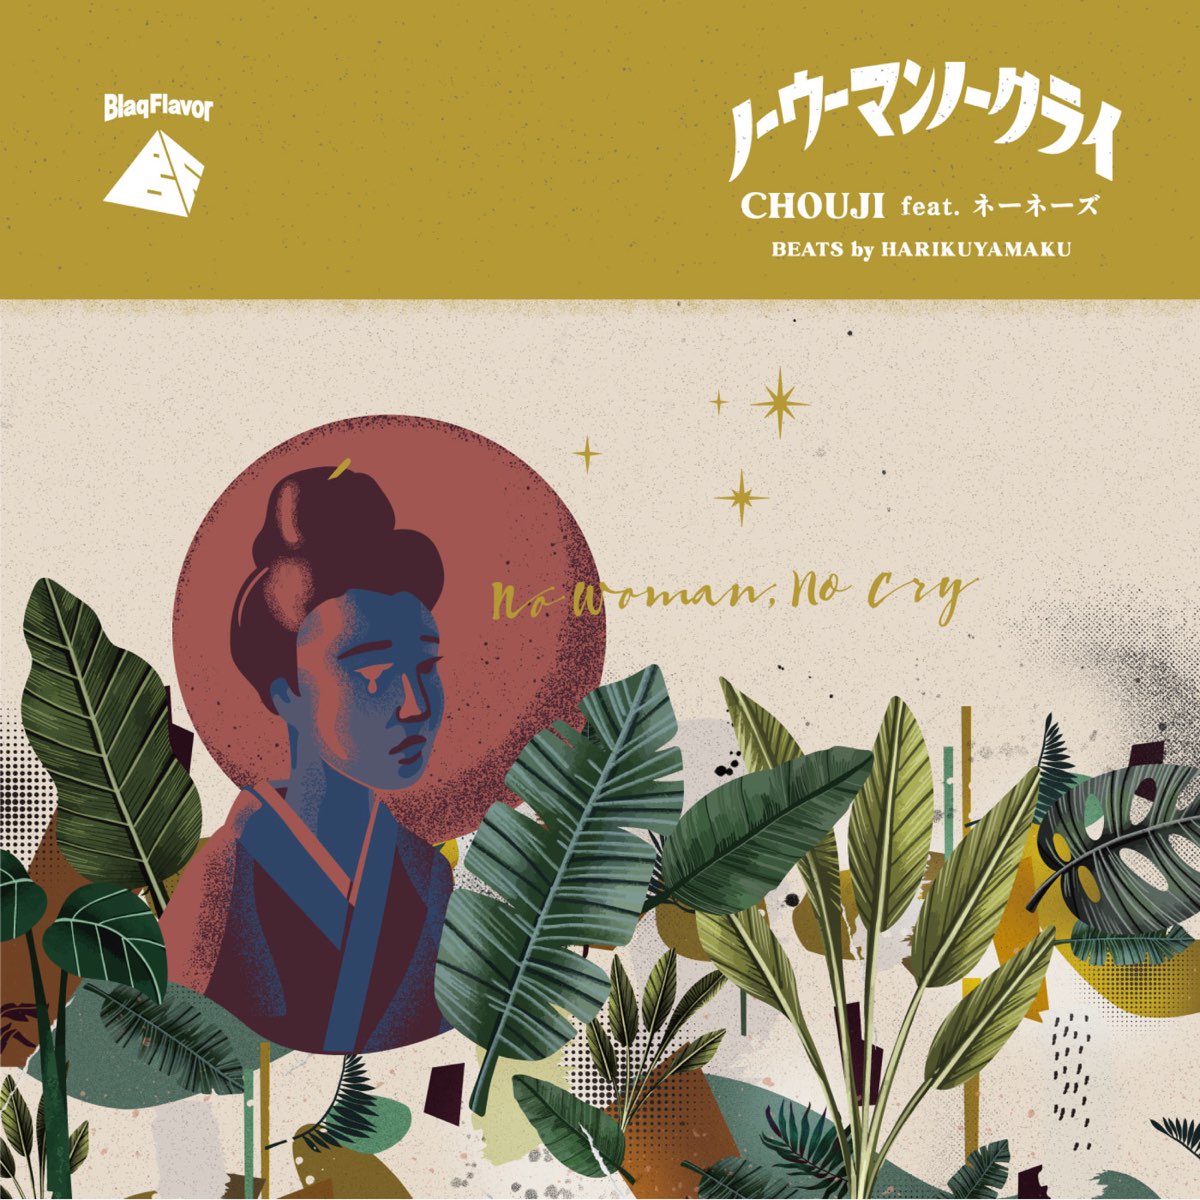 CHOUJI feat. ネーネーズ No Woman No Cry-